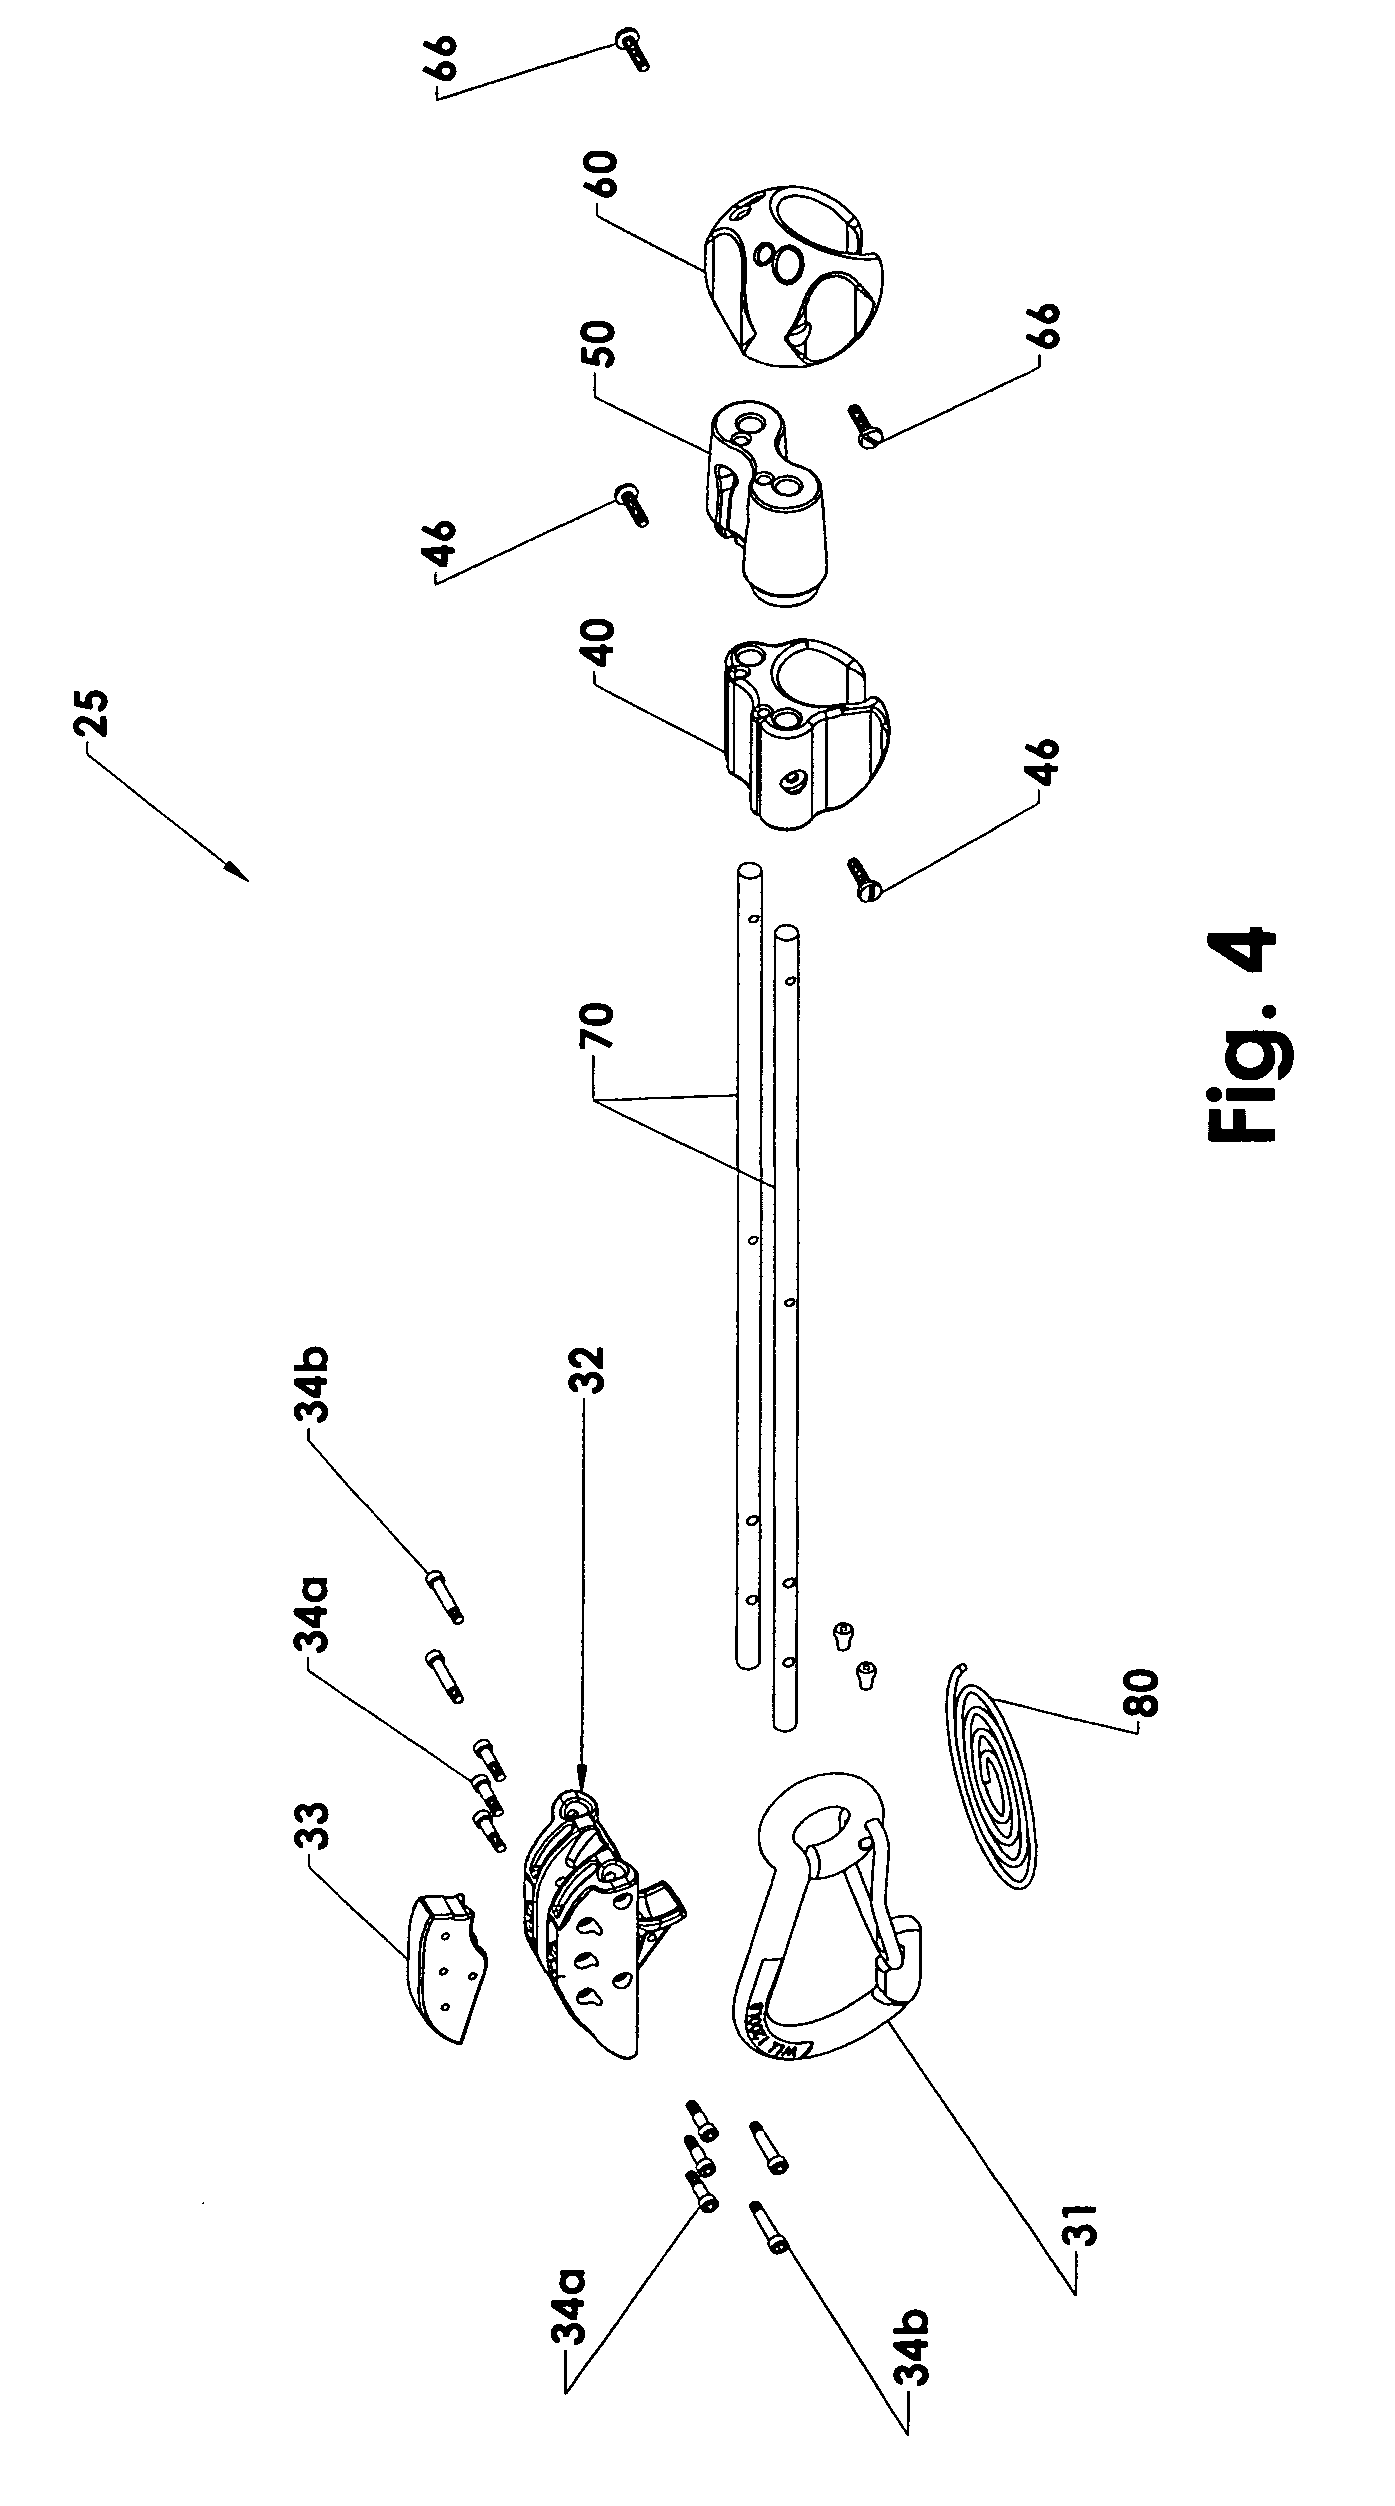 Dual rod mooring pendant apparatus